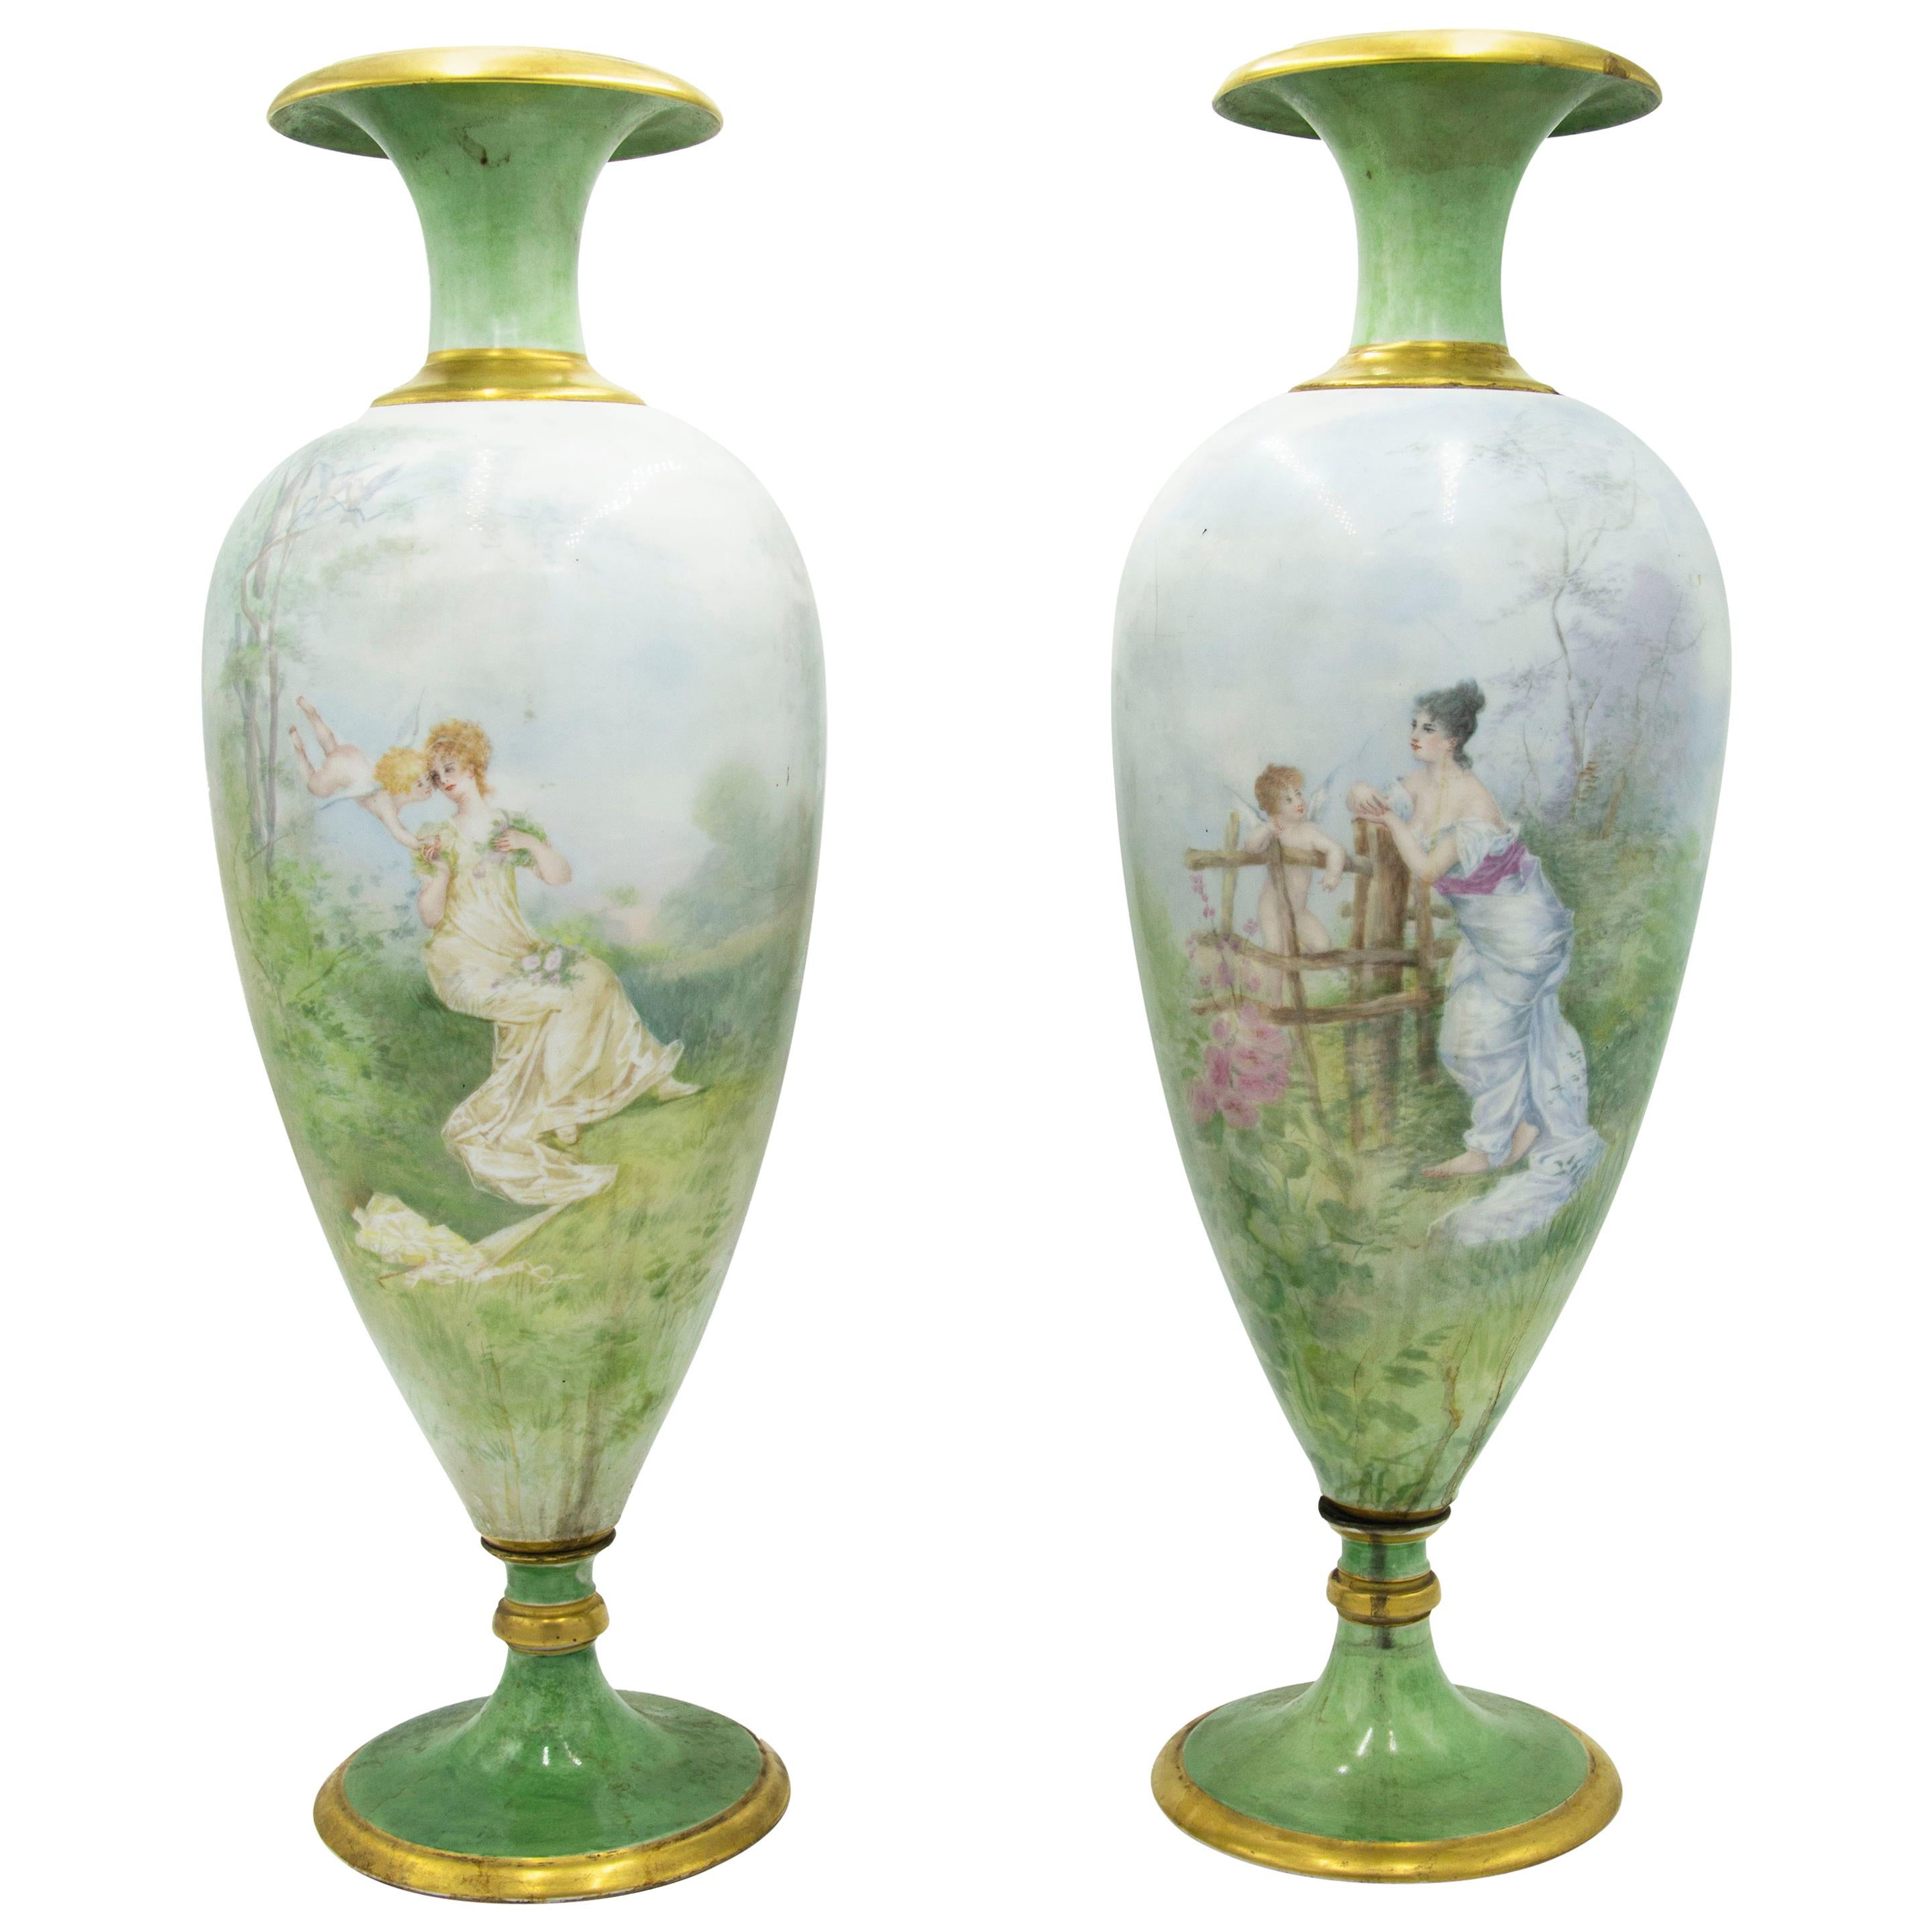 Paire de vases en porcelaine de Limoges verts de style victorien français